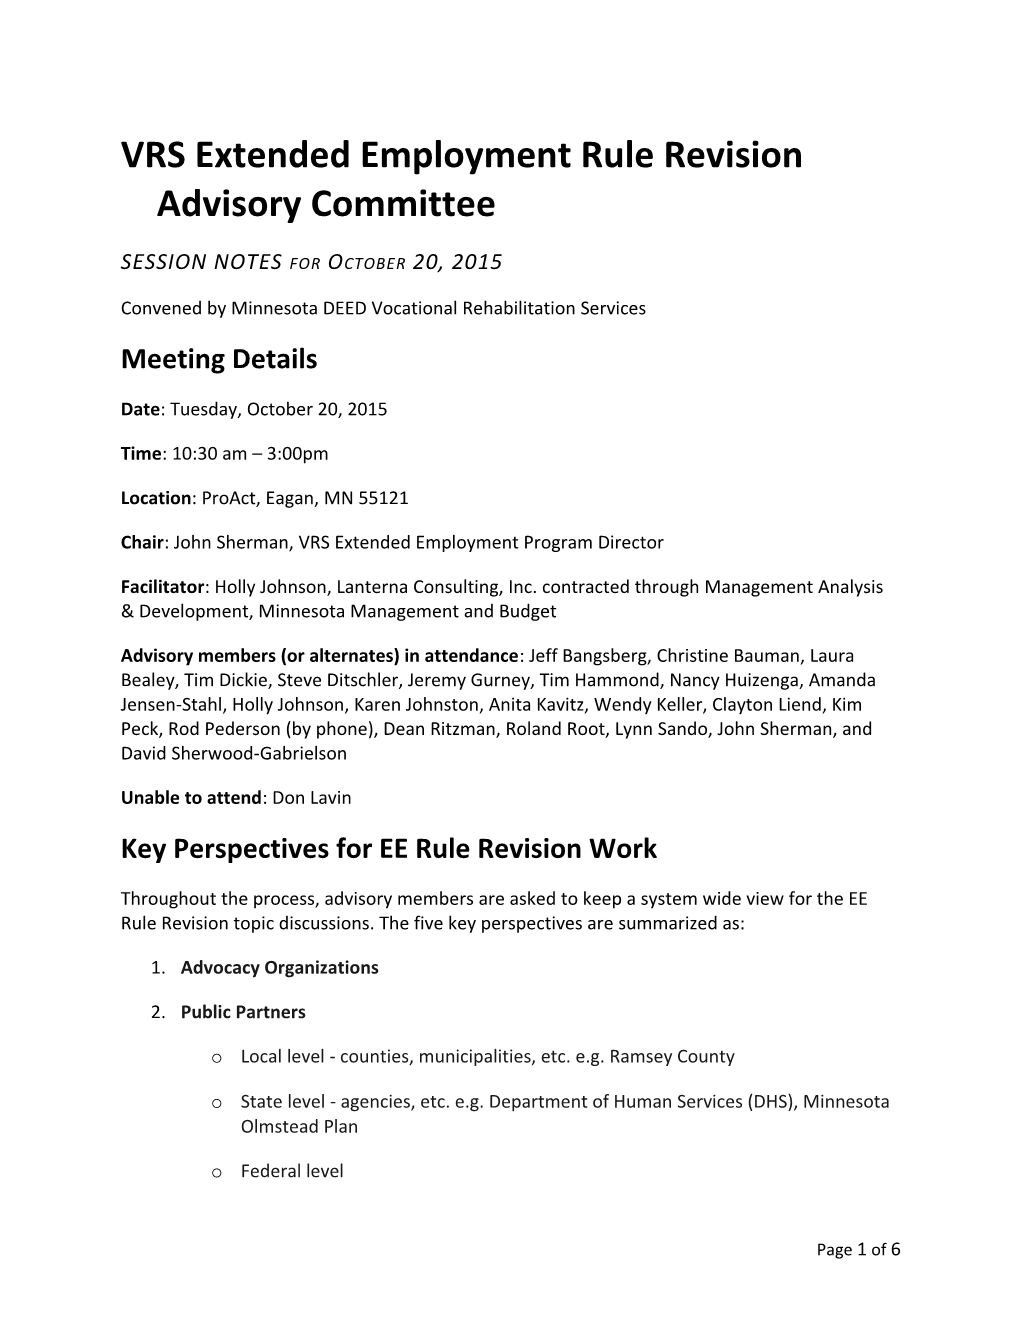 October 20, 2015 EE Rule Advisory Committee Meeting Minutes